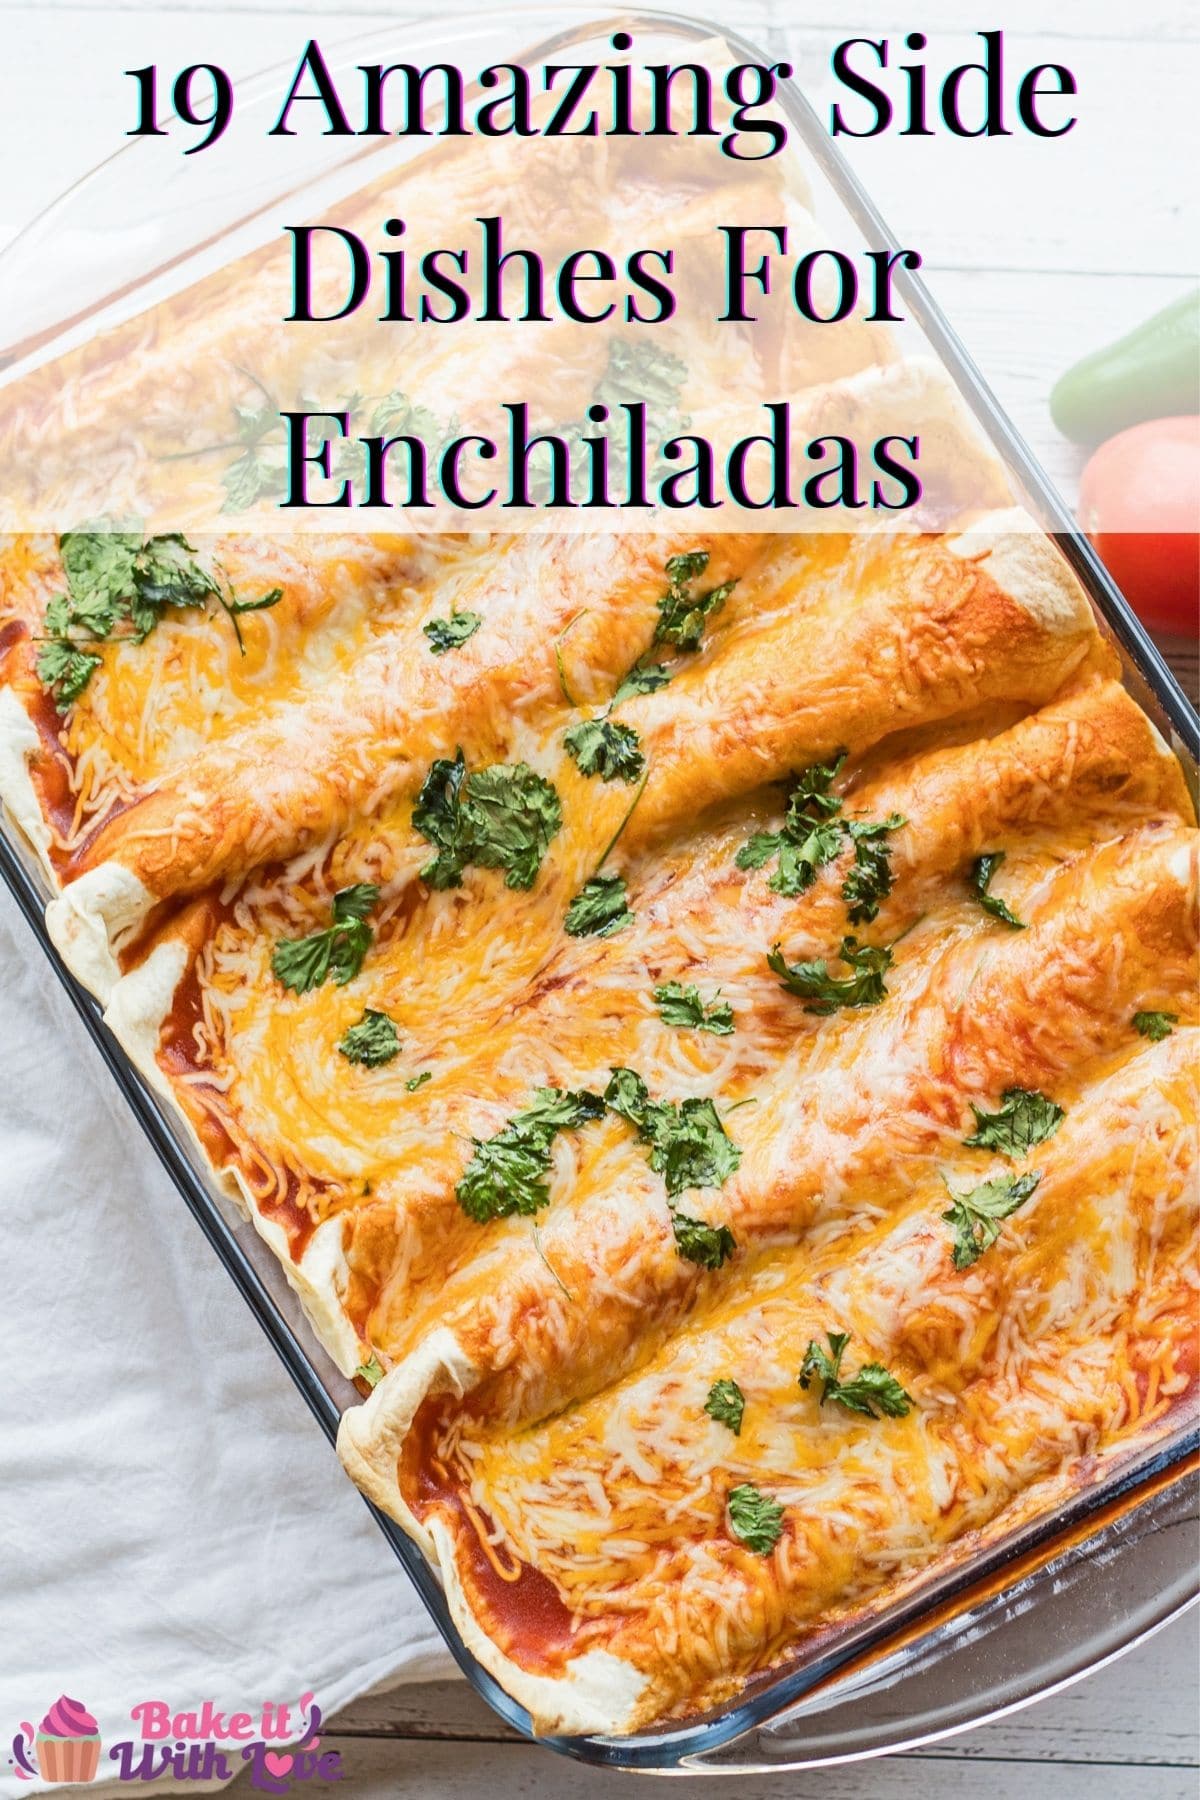 Hvad skal jeg servere med enchiladas pin med tekstoverskrift.